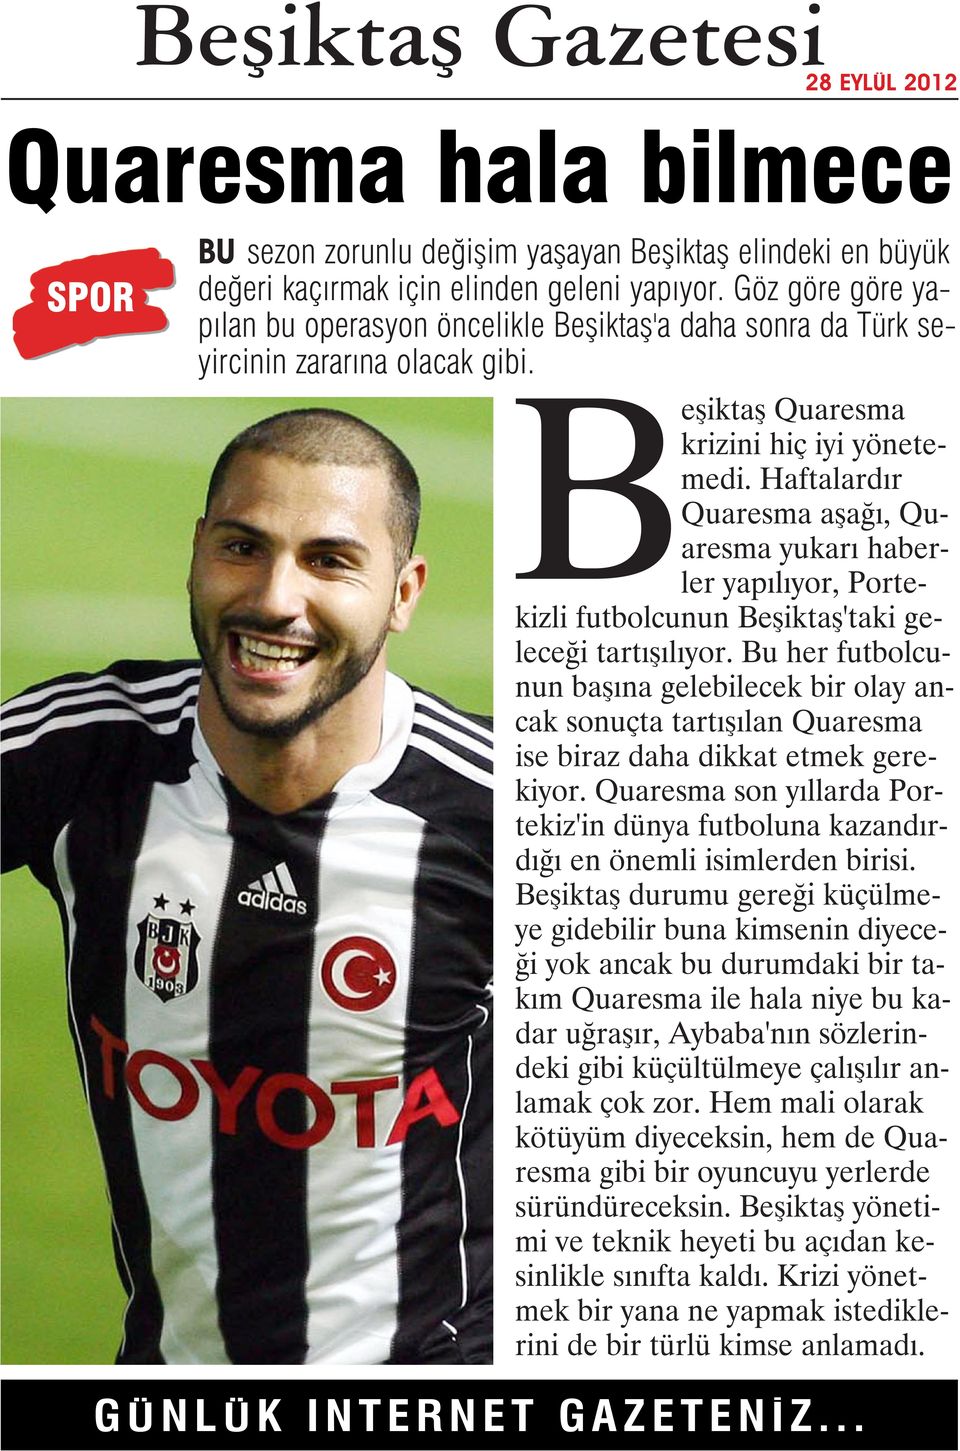 Haftalardır Quaresma aşağı, Quaresma yukarı haberler yapılıyor, Portekizli futbolcunun Beşiktaş'taki geleceği tartışılıyor.